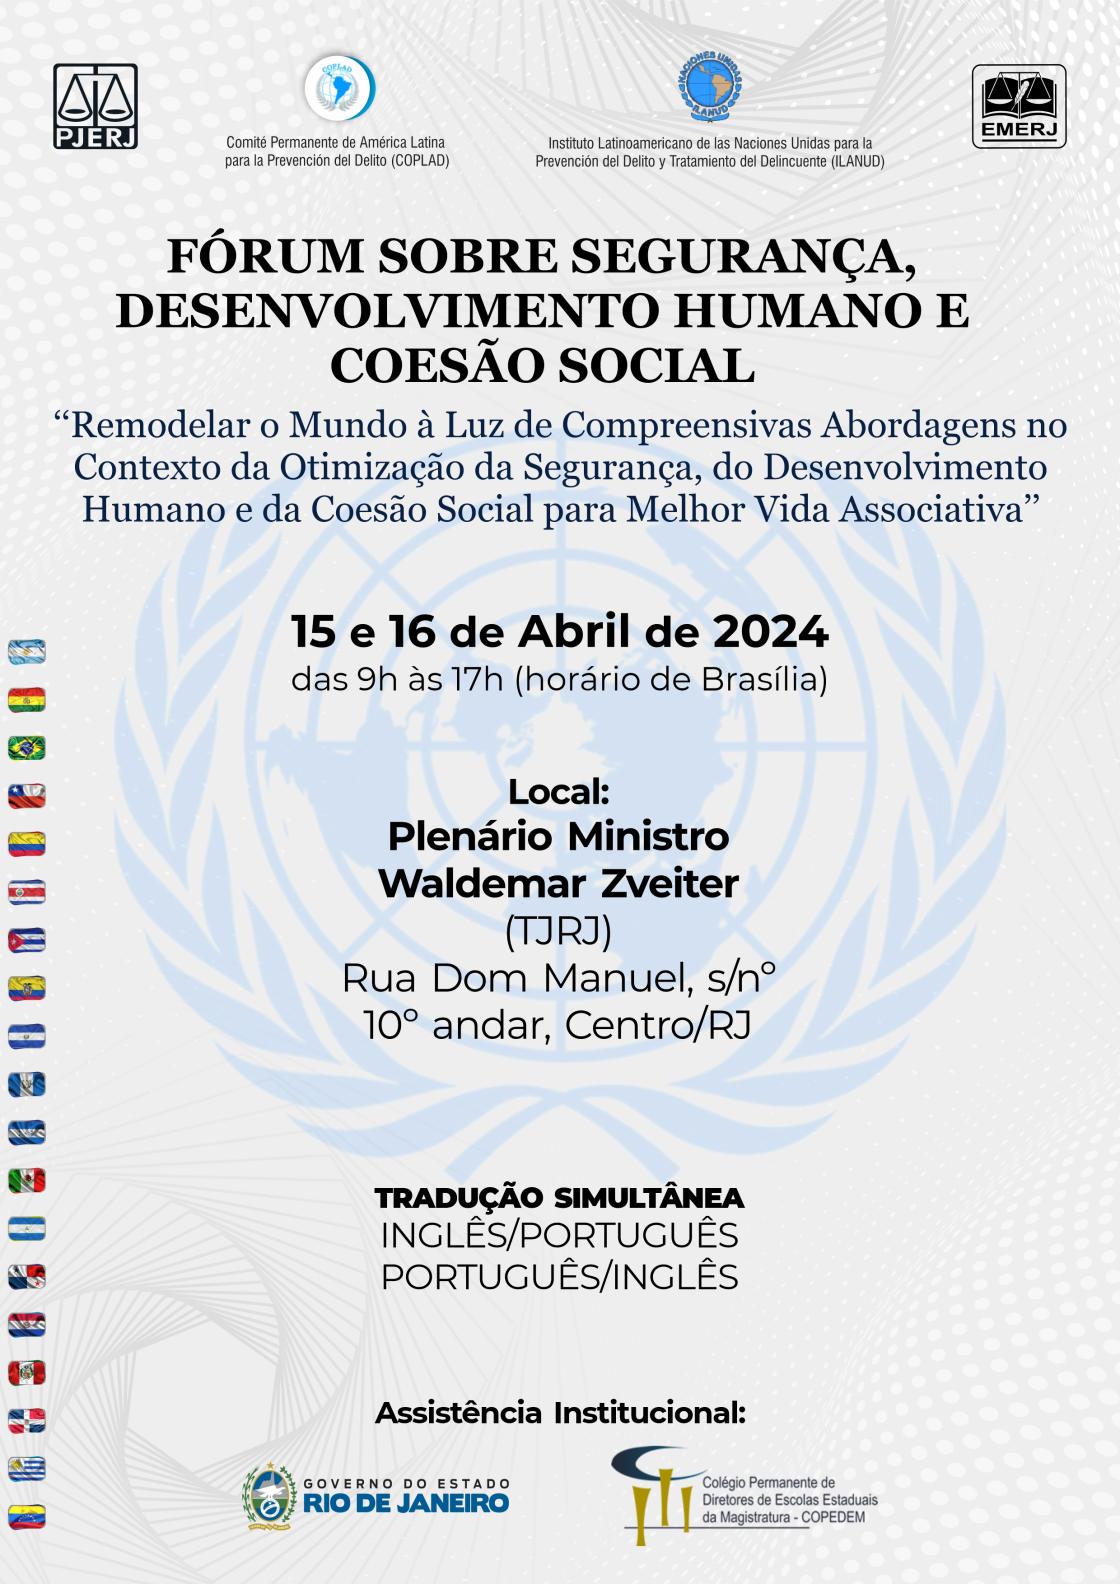 FÓRUM SOBRE SEGURANÇA, DESENVOLVIMENTO HUMANO E COESÃO SOCIAL - "Remodelar o Mundo à Luz de Compreensivas Abordagens no Contexto da Otimização da Segurança, do Desenvolvimento Humano e da Coesão Social para Melhor Vida Associativa" - 15 e 16 de Abril de 2024 - das 9h às 17h (horário de Brasília) - Local: Plenário Ministro Waldemar Zveiter (TJRJ) Rua Dom Manuel, s/nº 10º andar, Centro/RJ - TRADUÇÃO SIMULTÂNEA INGLÊS/PORTUGUÊS PORTUGUÊS/INGLÊS - Assistência Institucional: GOVERNO DO ESTADO RIO DE JANEIRO - Colégio Permanente de Diretores de Escolas Estaduais da Magistratura-COPEDEM